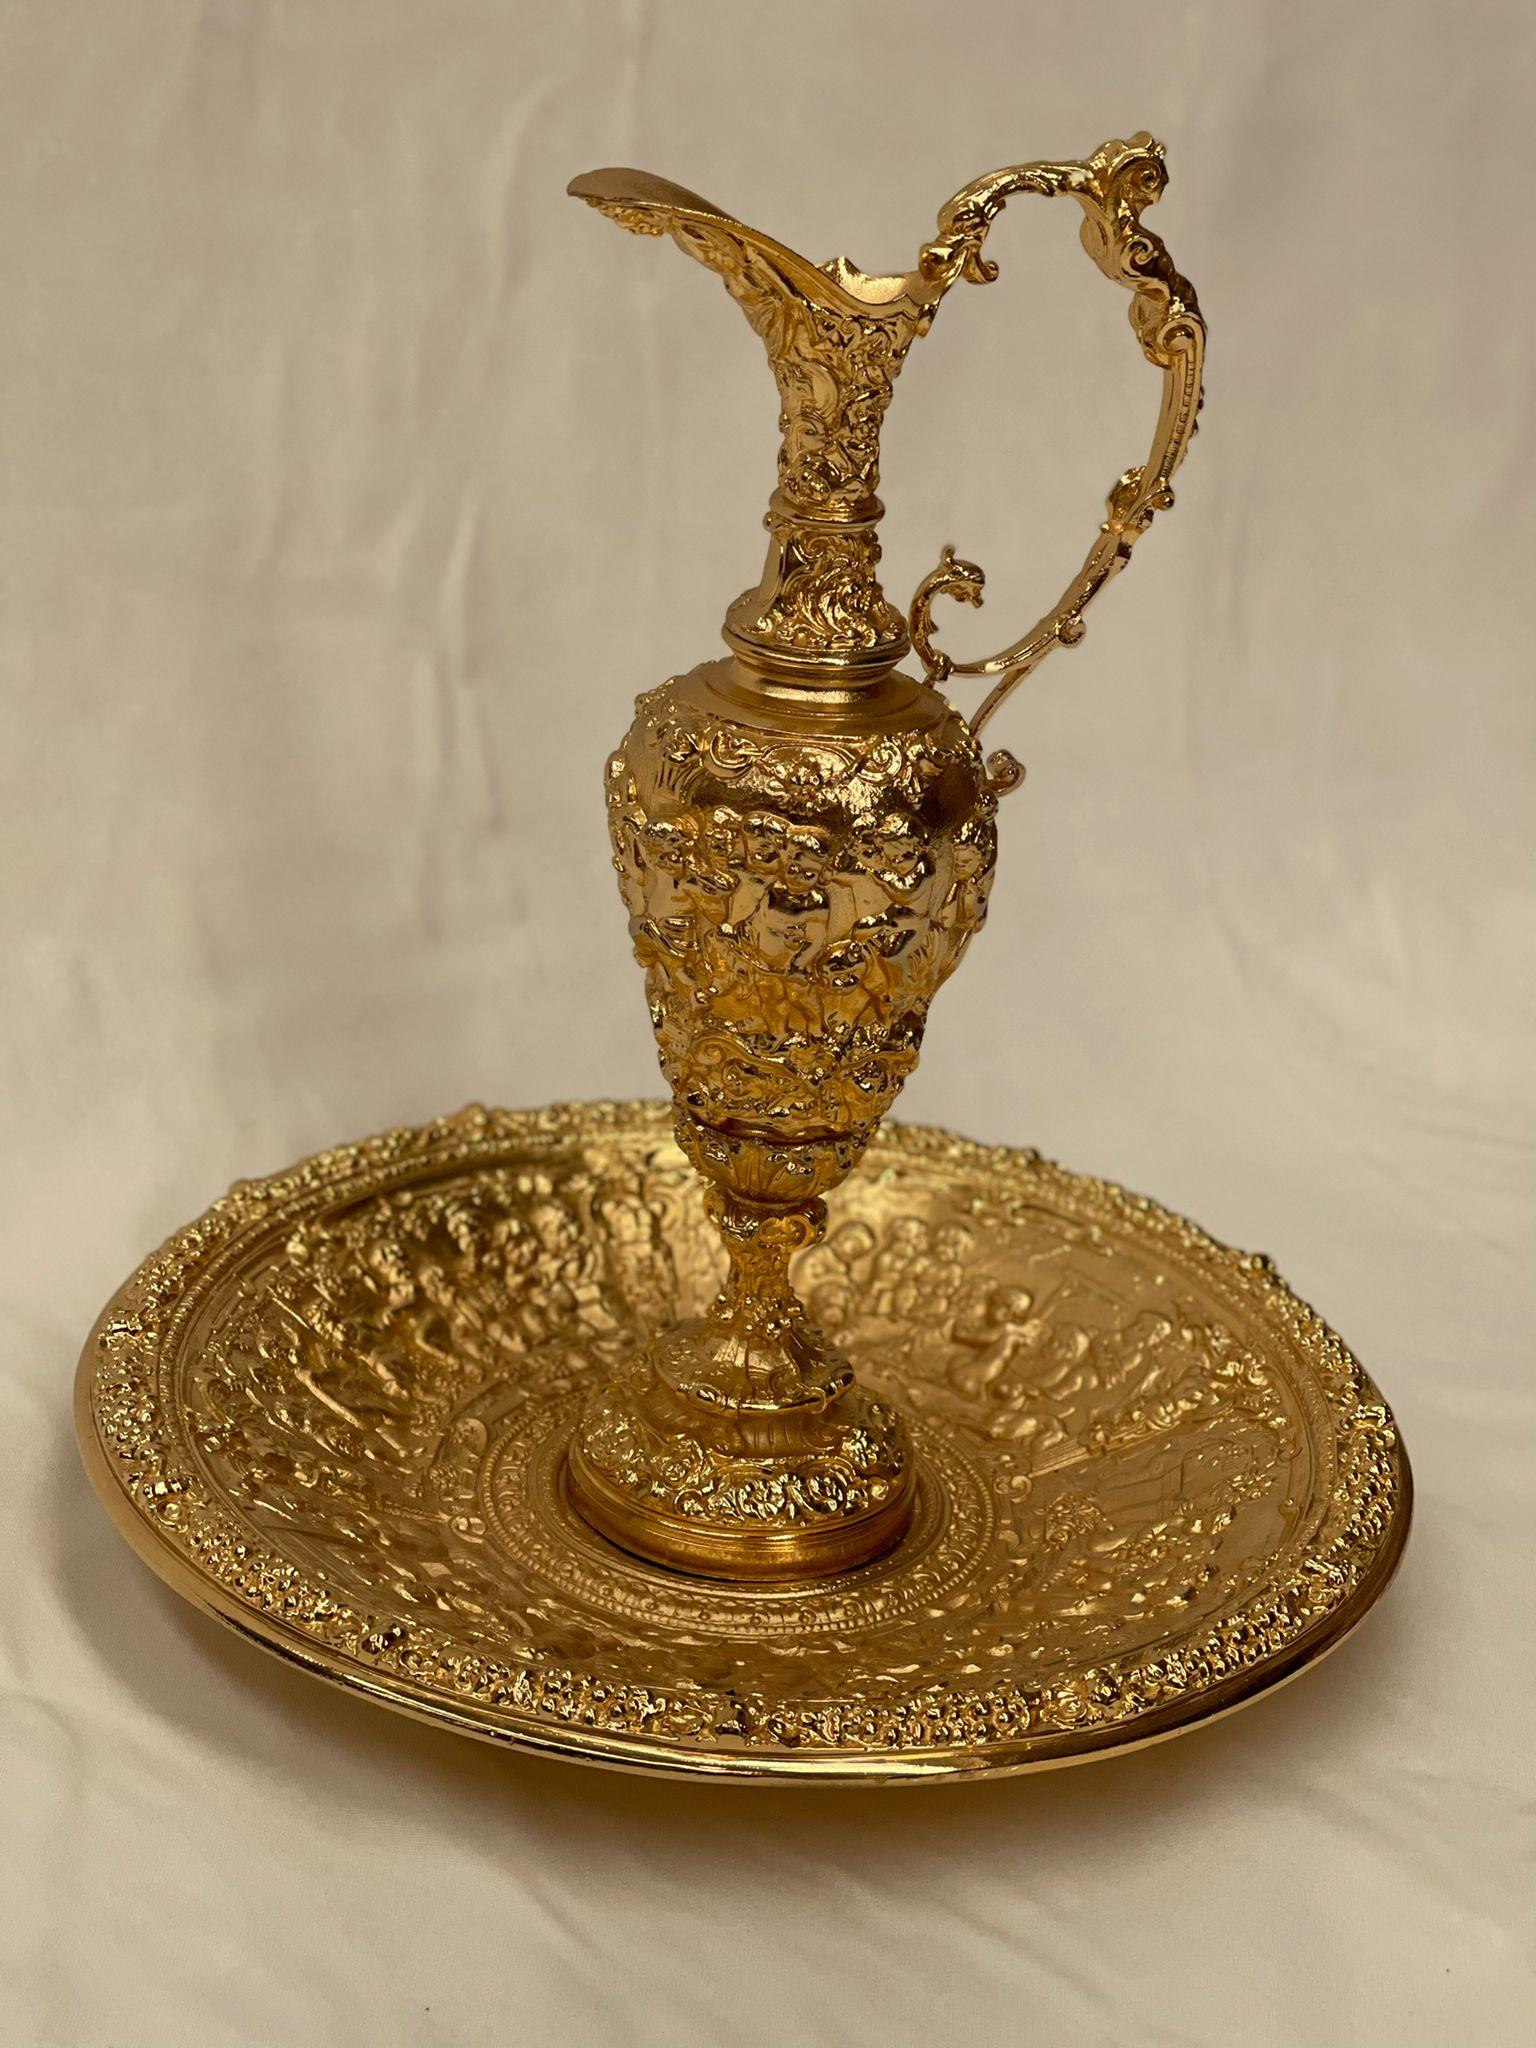 Ein einzigartiges Stück aus Bronze, ideal, um Ihrer Einrichtung einen Hauch von Klasse zu verleihen. Cup of Bernini ist ein Produkt, das für all jene geschaffen wurde, die ein Team suchen, das Eleganz und Hobby verbindet. Sie wurde in stundenlanger